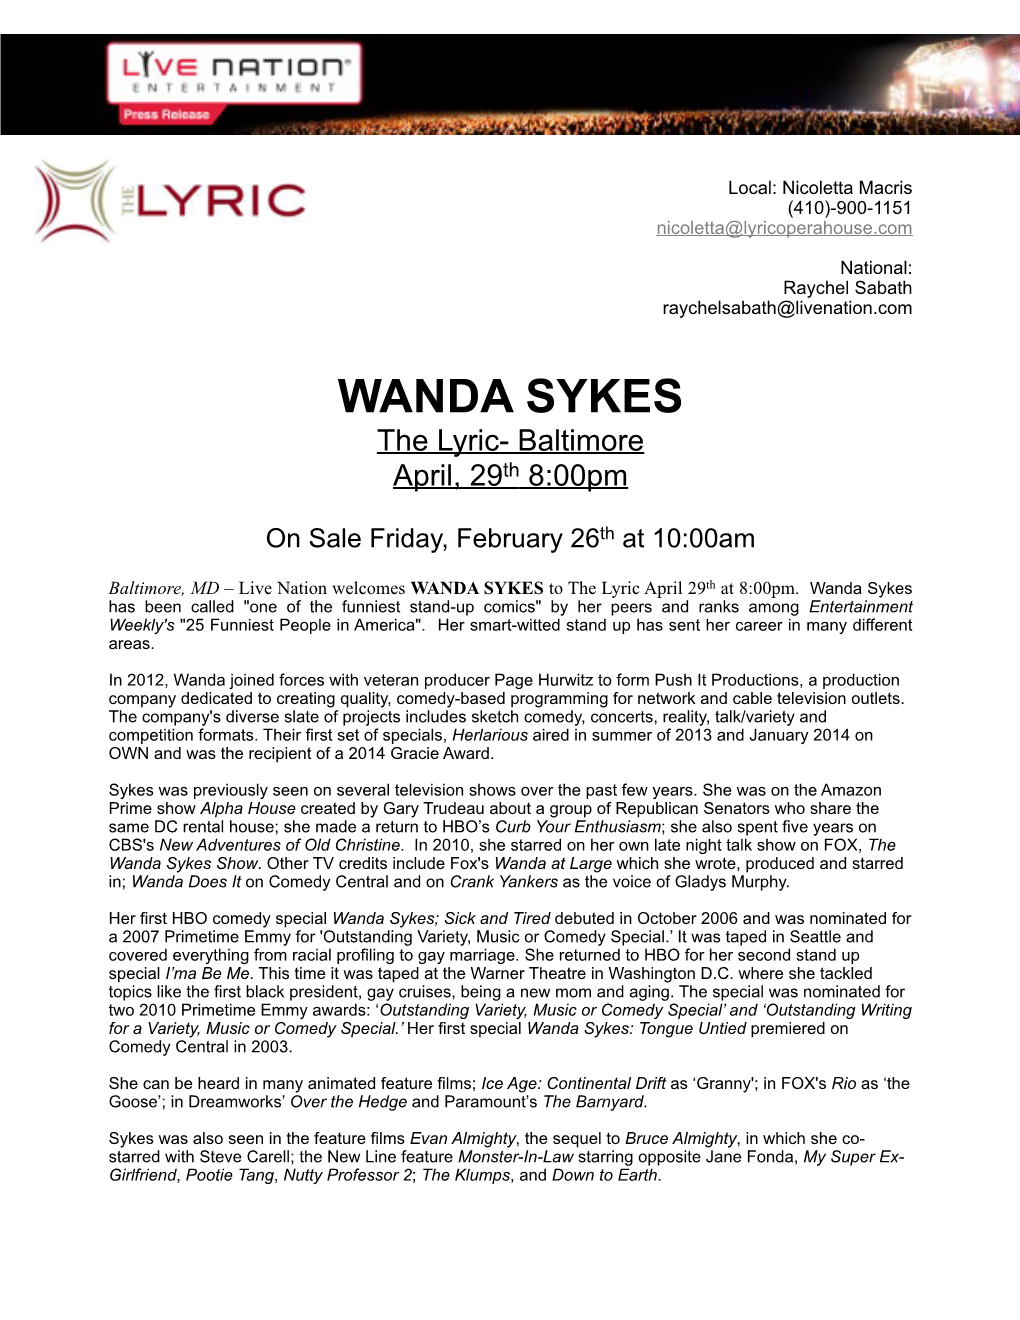 Wanda Sykes PR